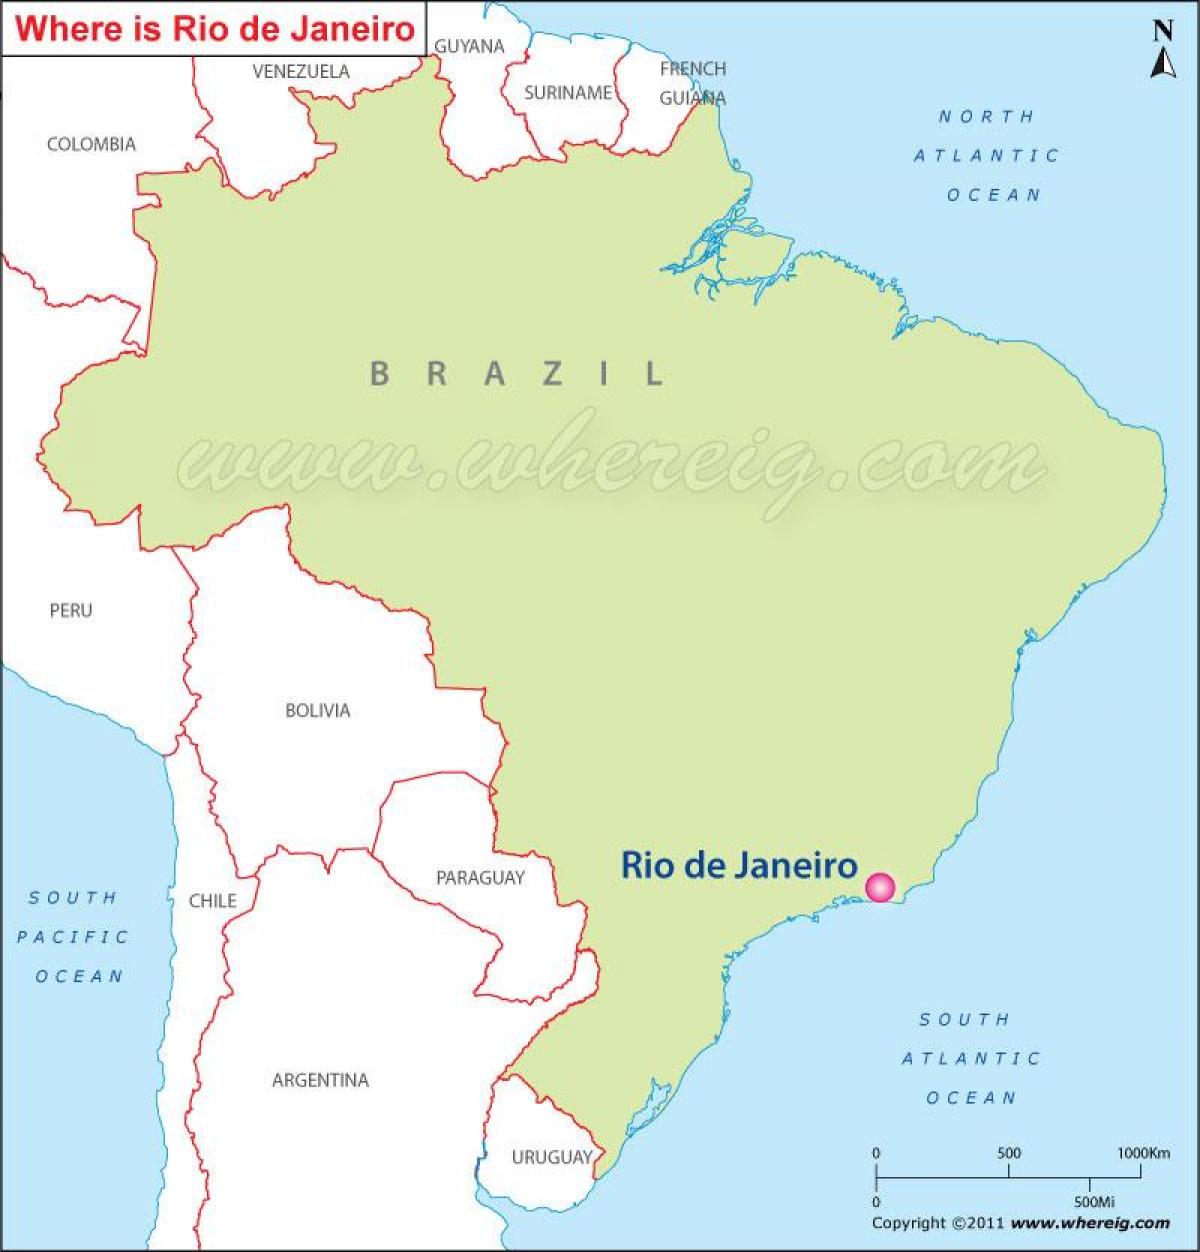 Kart over Rio de Janeiro i Brasil